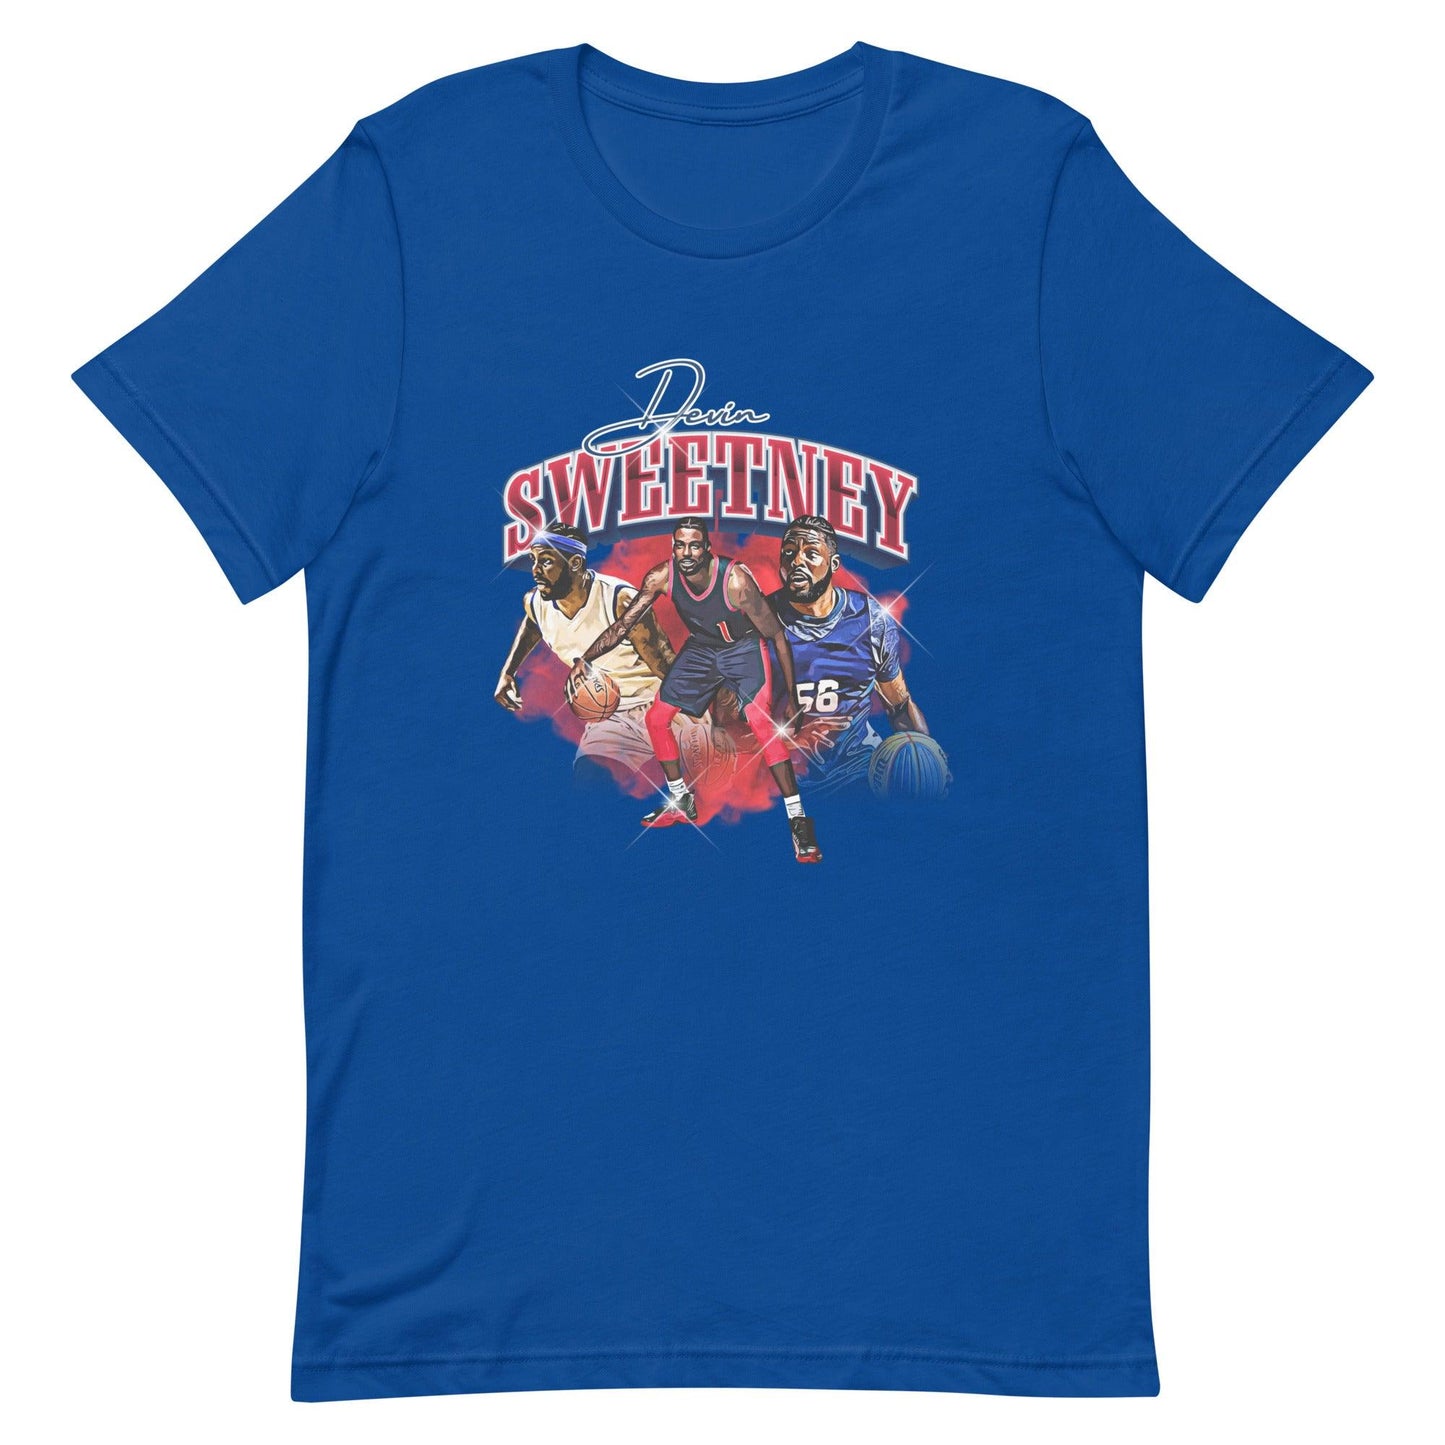 Devin Sweetney "Legacy" t-shirt - Fan Arch